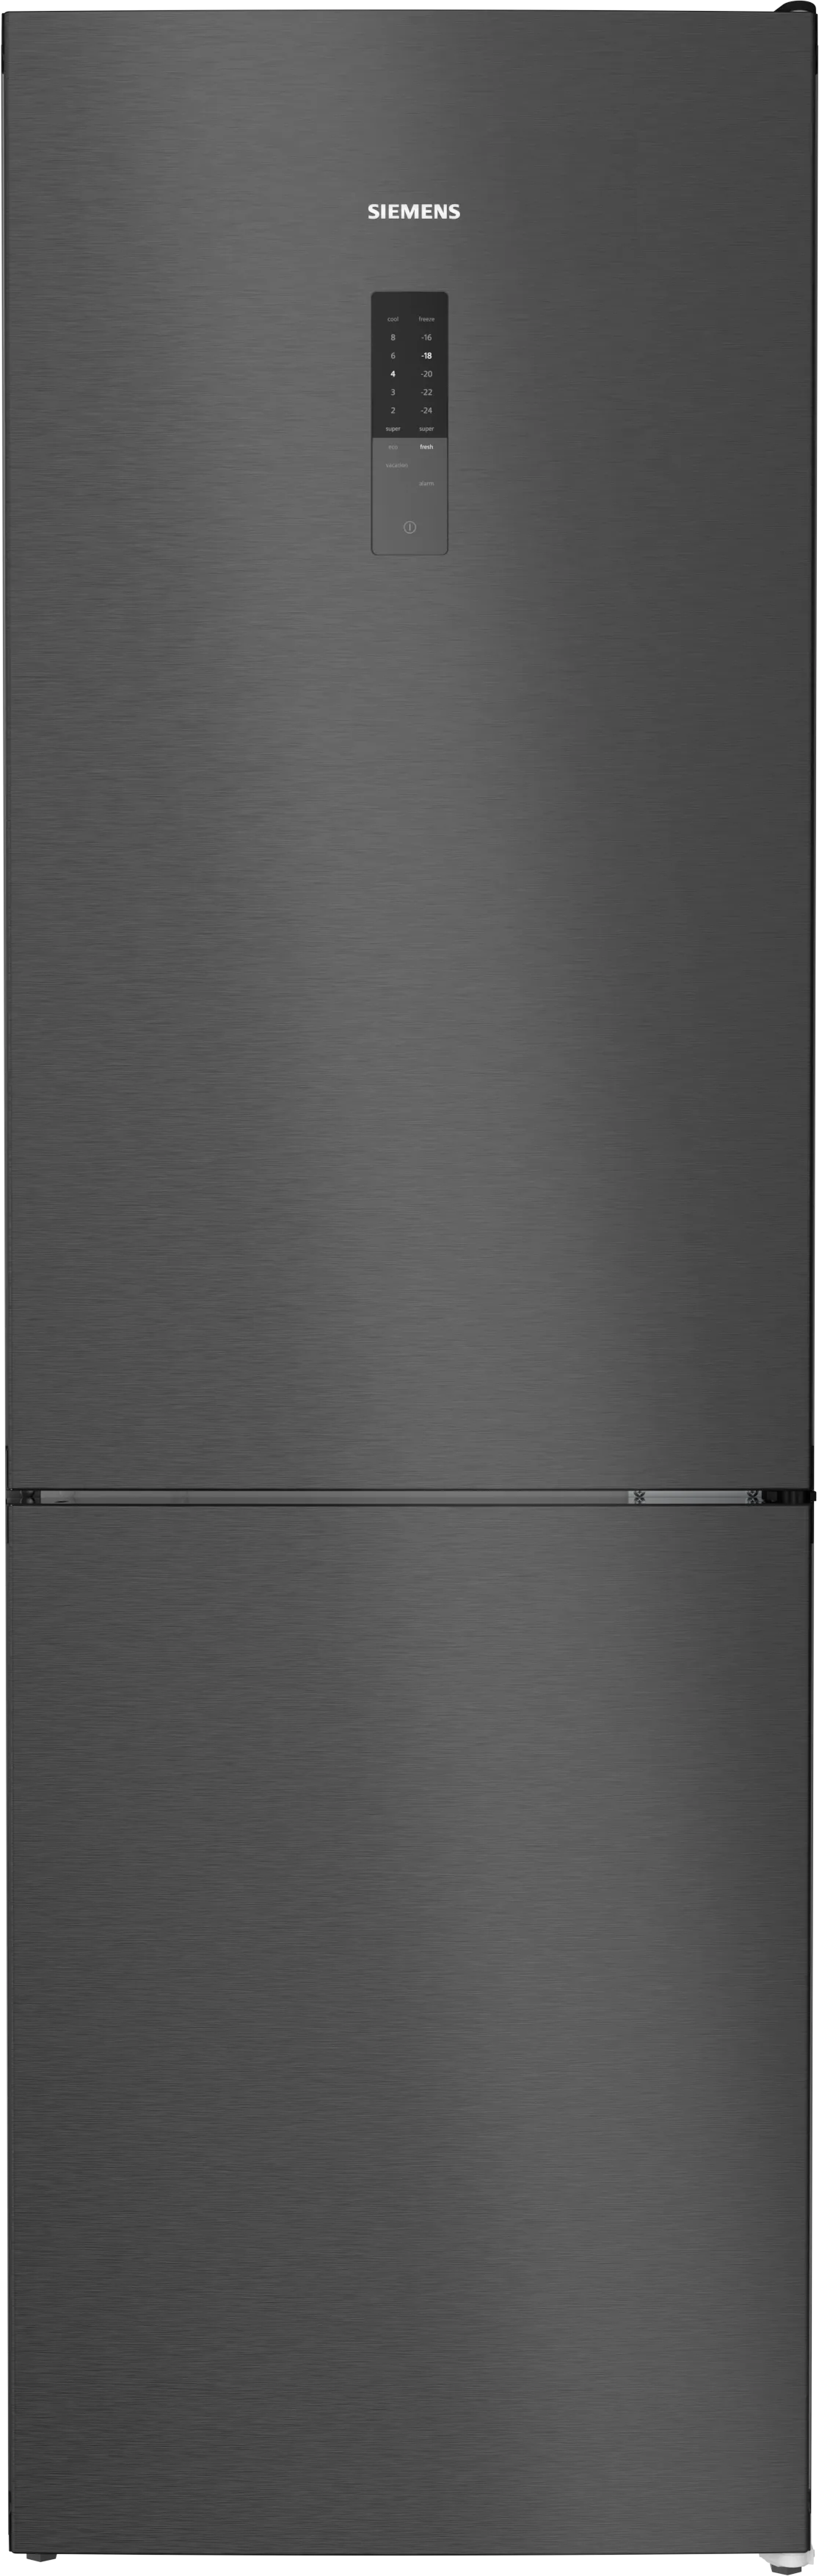 iQ300 Combiné pose libre avec congélateur en bas 186 x 60 cm Acier noir brossé antiFingerprint 